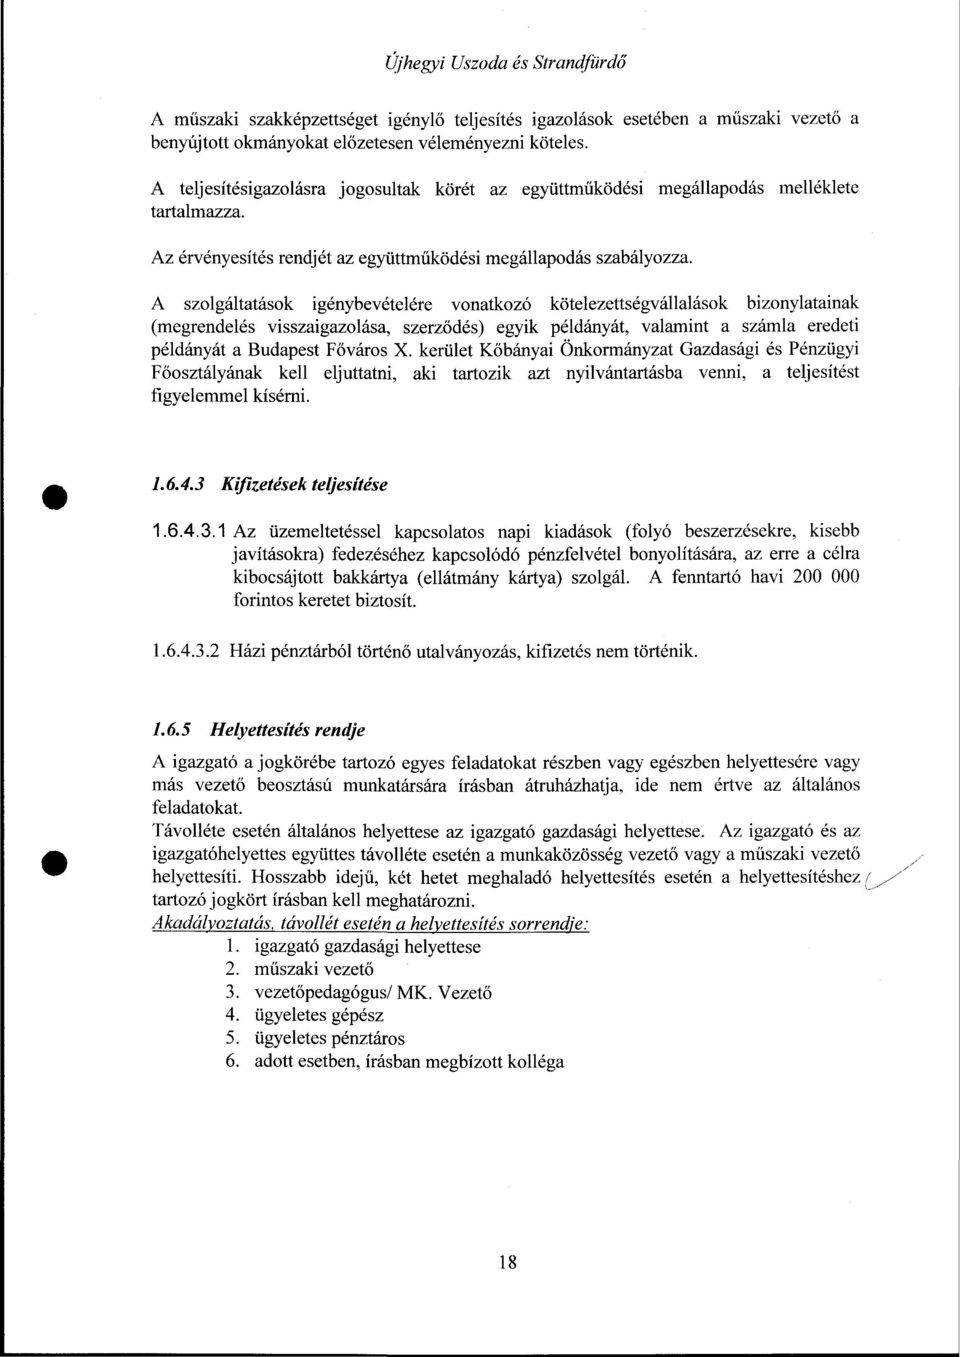 A szolgáltatások igénybevételére vonatkozó kötelezettségvállalások bizonylatainak (megrendelés visszaigazolása, szerződés) egyik példányát, valamint a számla eredeti példányát a Budapest Főváros X.